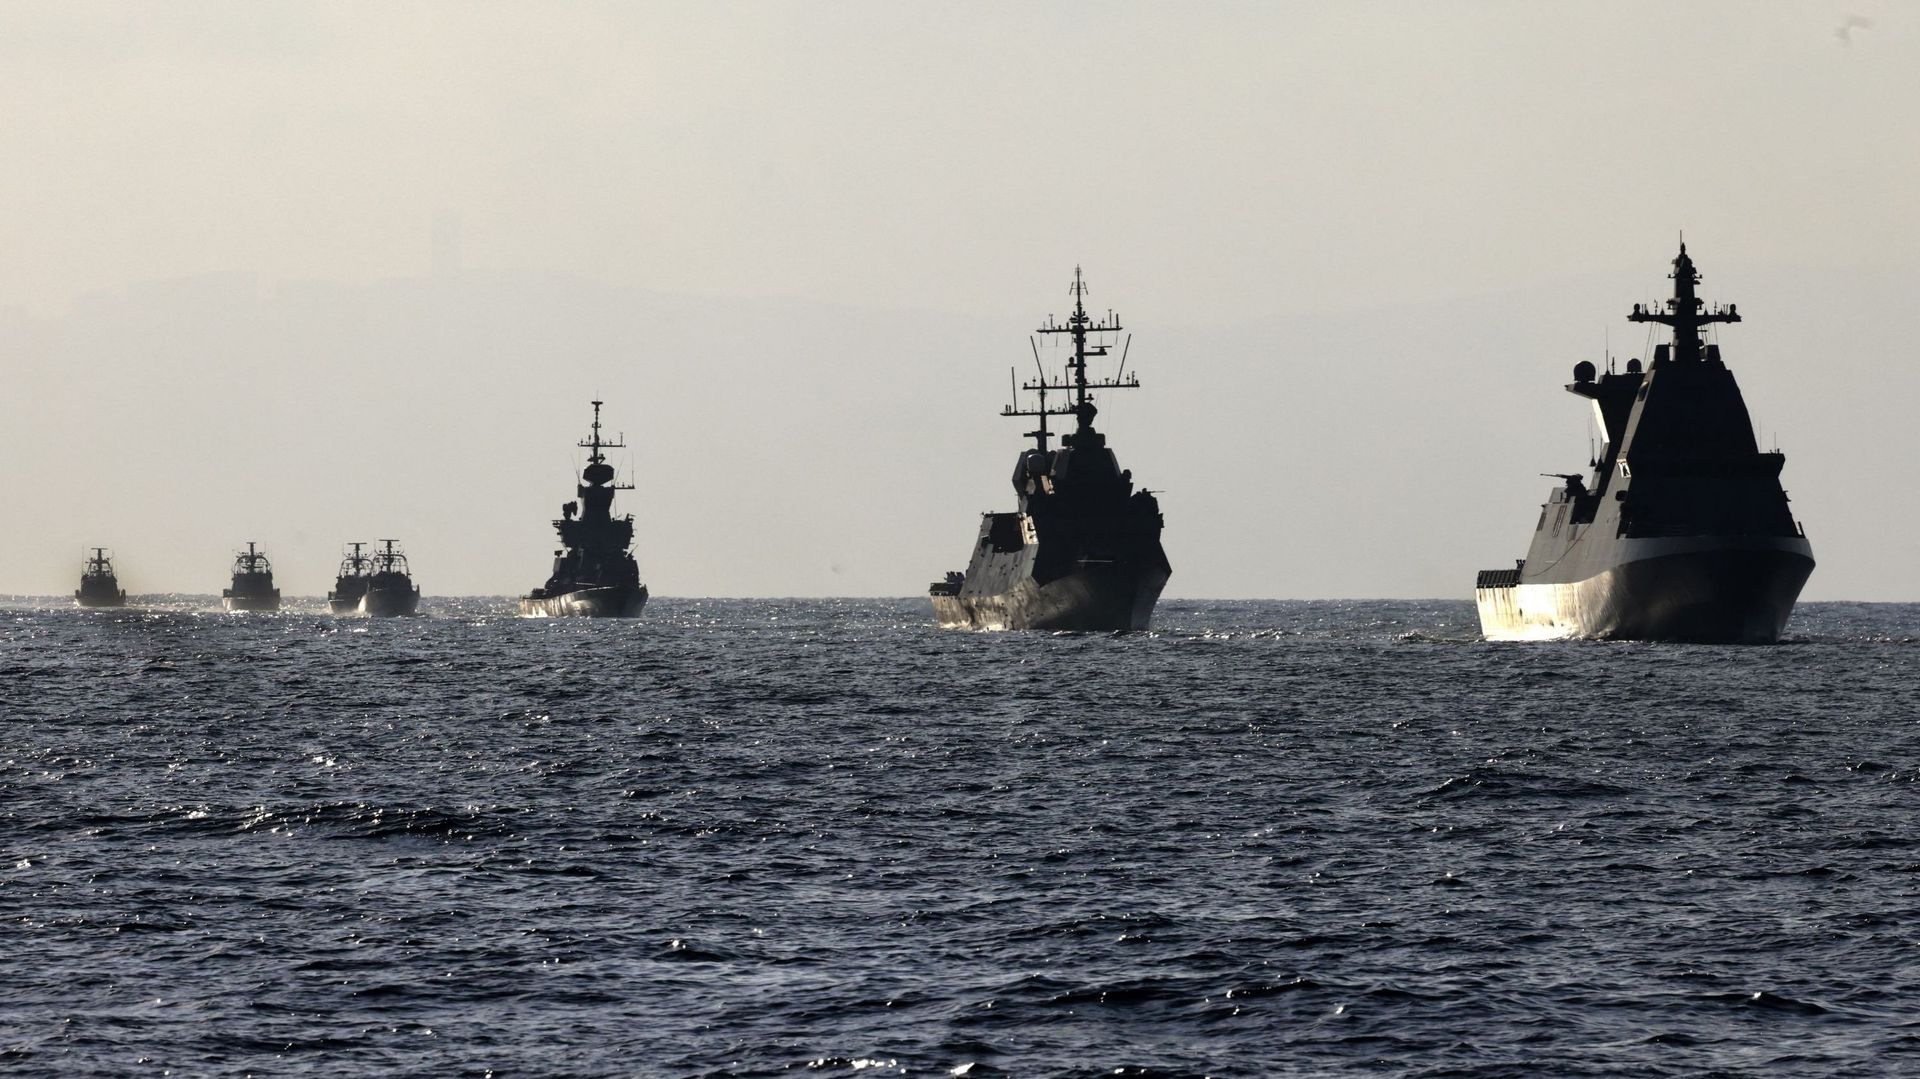 Une flottille de navires de la marine israélienne navigue lors d'une cérémonie d'accueil du navire de guerre Atzmaut, une corvette Saar 6, après son arrivée d'Allemagne, le 10 août 2021, en mer Méditerranée, à quelque 40 kilomètres des côtes israéliennes.